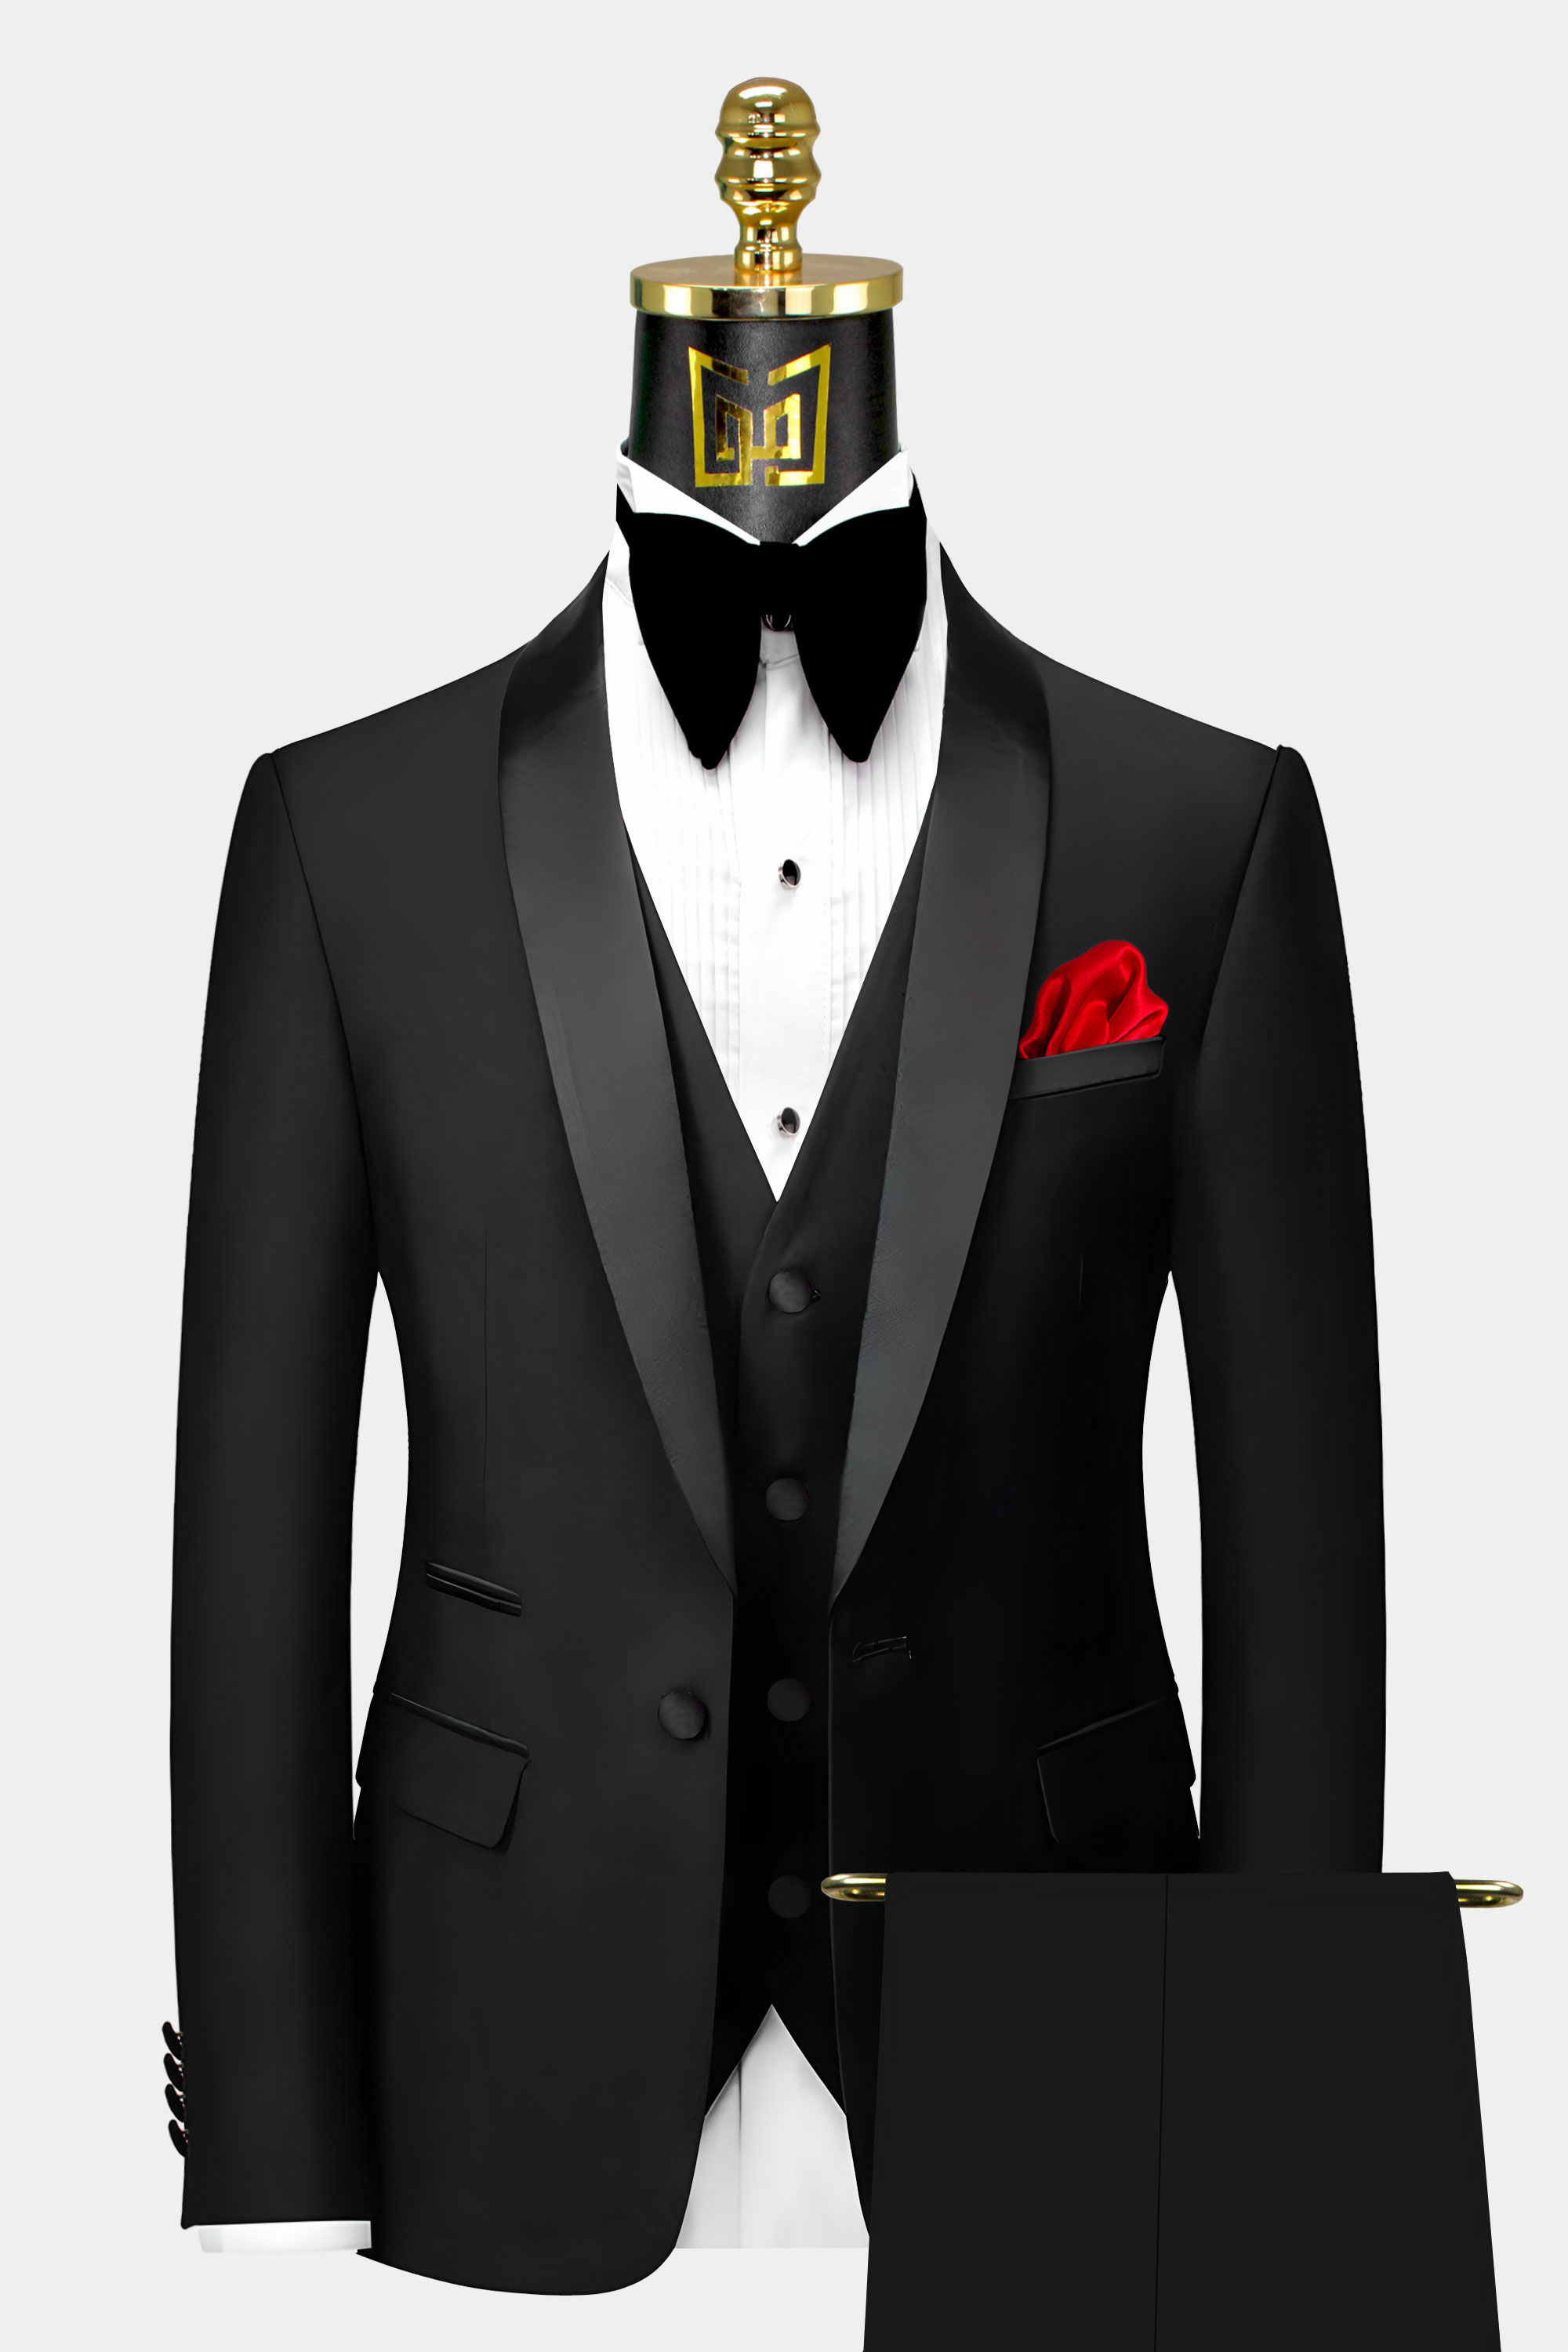 https://www.gentlemansguru.com/wp-content/uploads/2020/12/Mens-Classic-Black-Tuxedo-Suit-Groom-Wedding-Prom-Suit-from-Gentlemansguru.com_.jpg